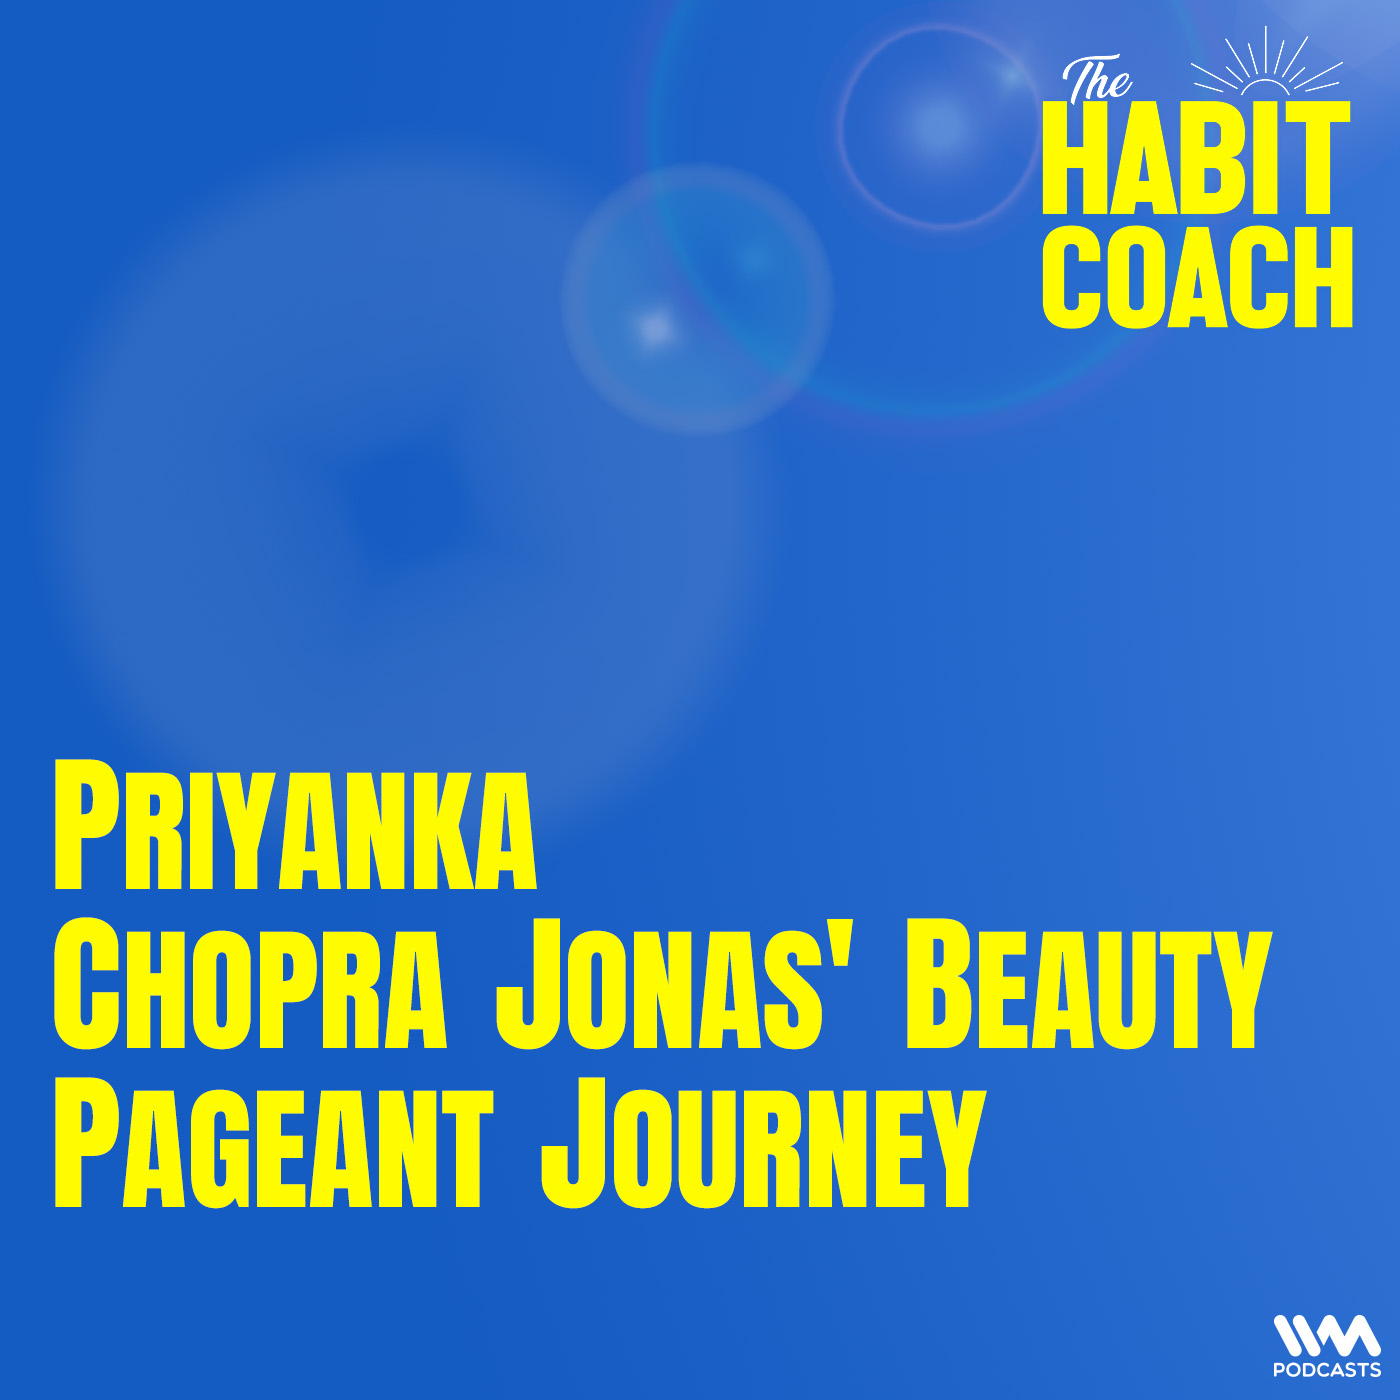 Priyanka Chopra Jonas' Beauty Pageant Journey